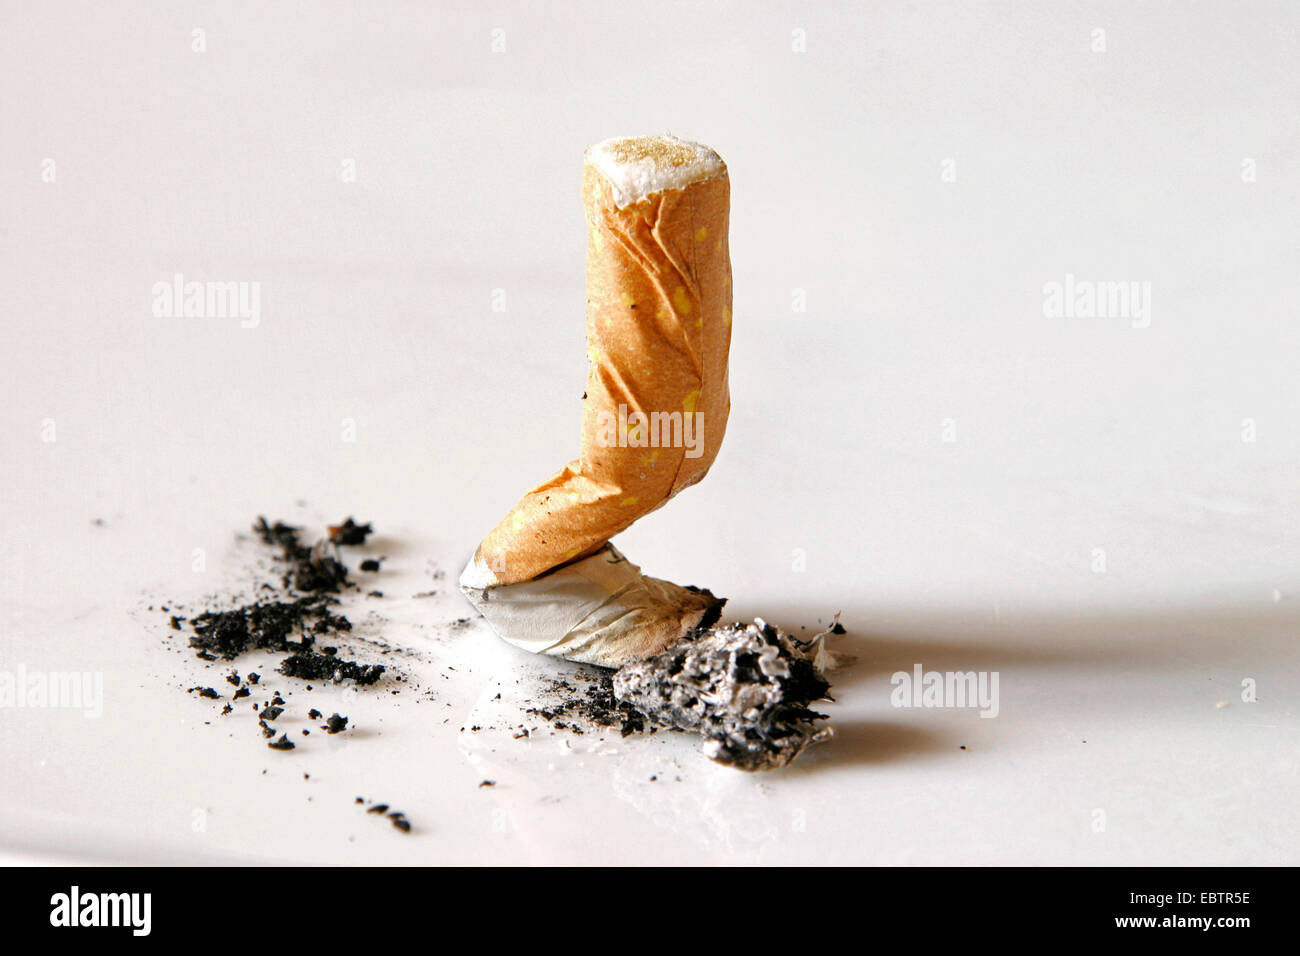 Zigarette auf einer weißen Fläche gerodet Stockfoto